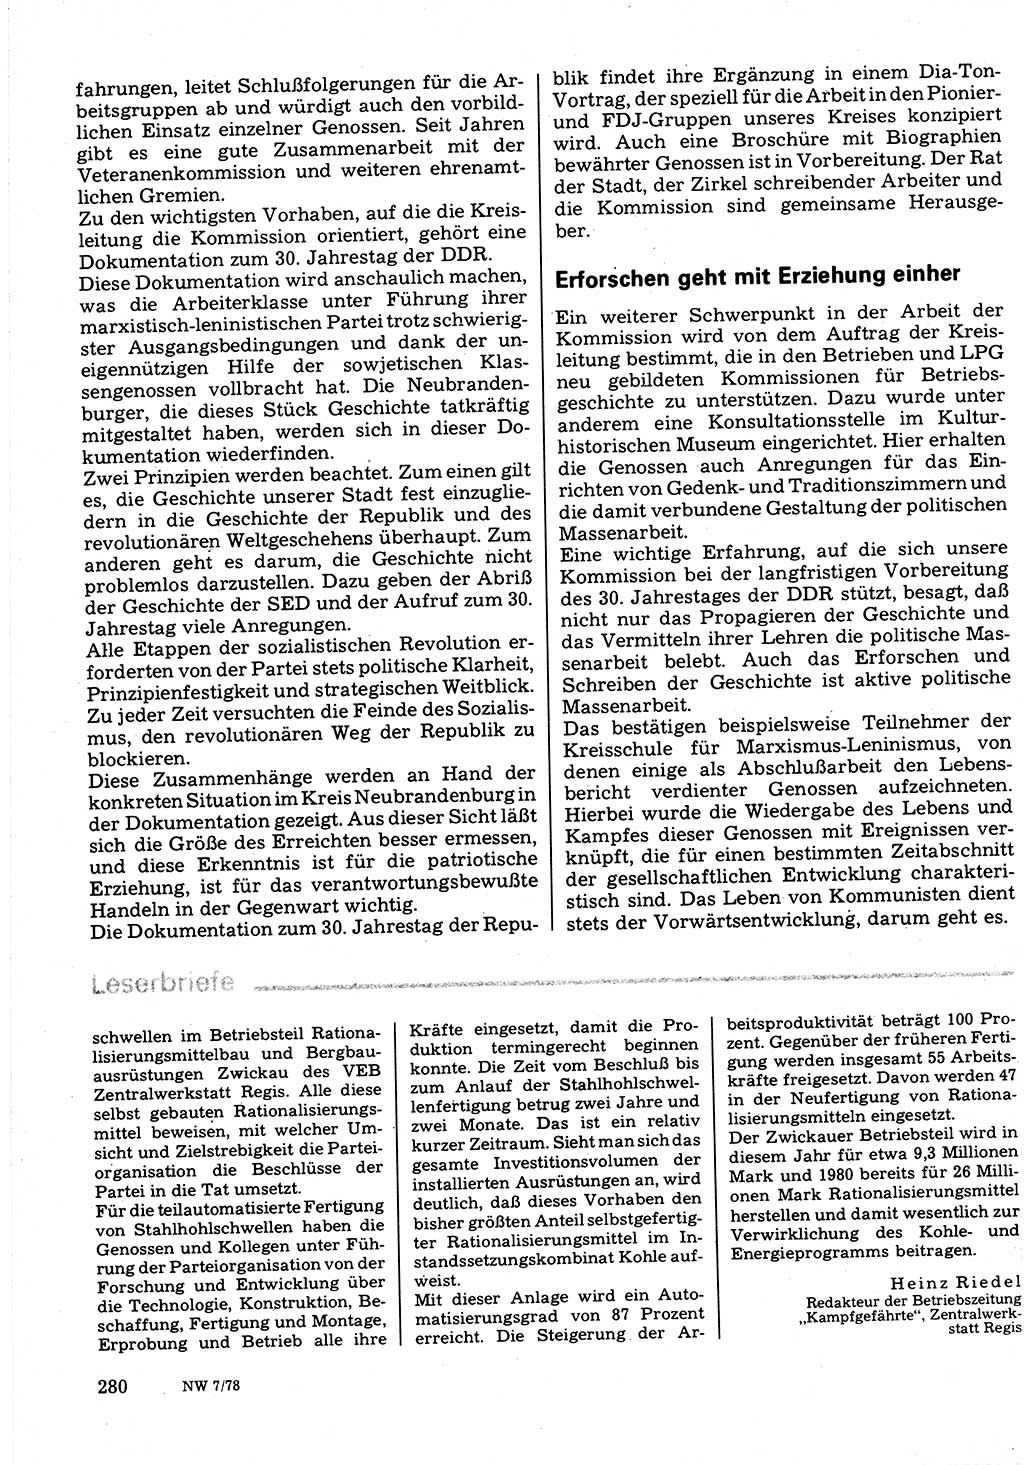 Neuer Weg (NW), Organ des Zentralkomitees (ZK) der SED (Sozialistische Einheitspartei Deutschlands) für Fragen des Parteilebens, 33. Jahrgang [Deutsche Demokratische Republik (DDR)] 1978, Seite 280 (NW ZK SED DDR 1978, S. 280)